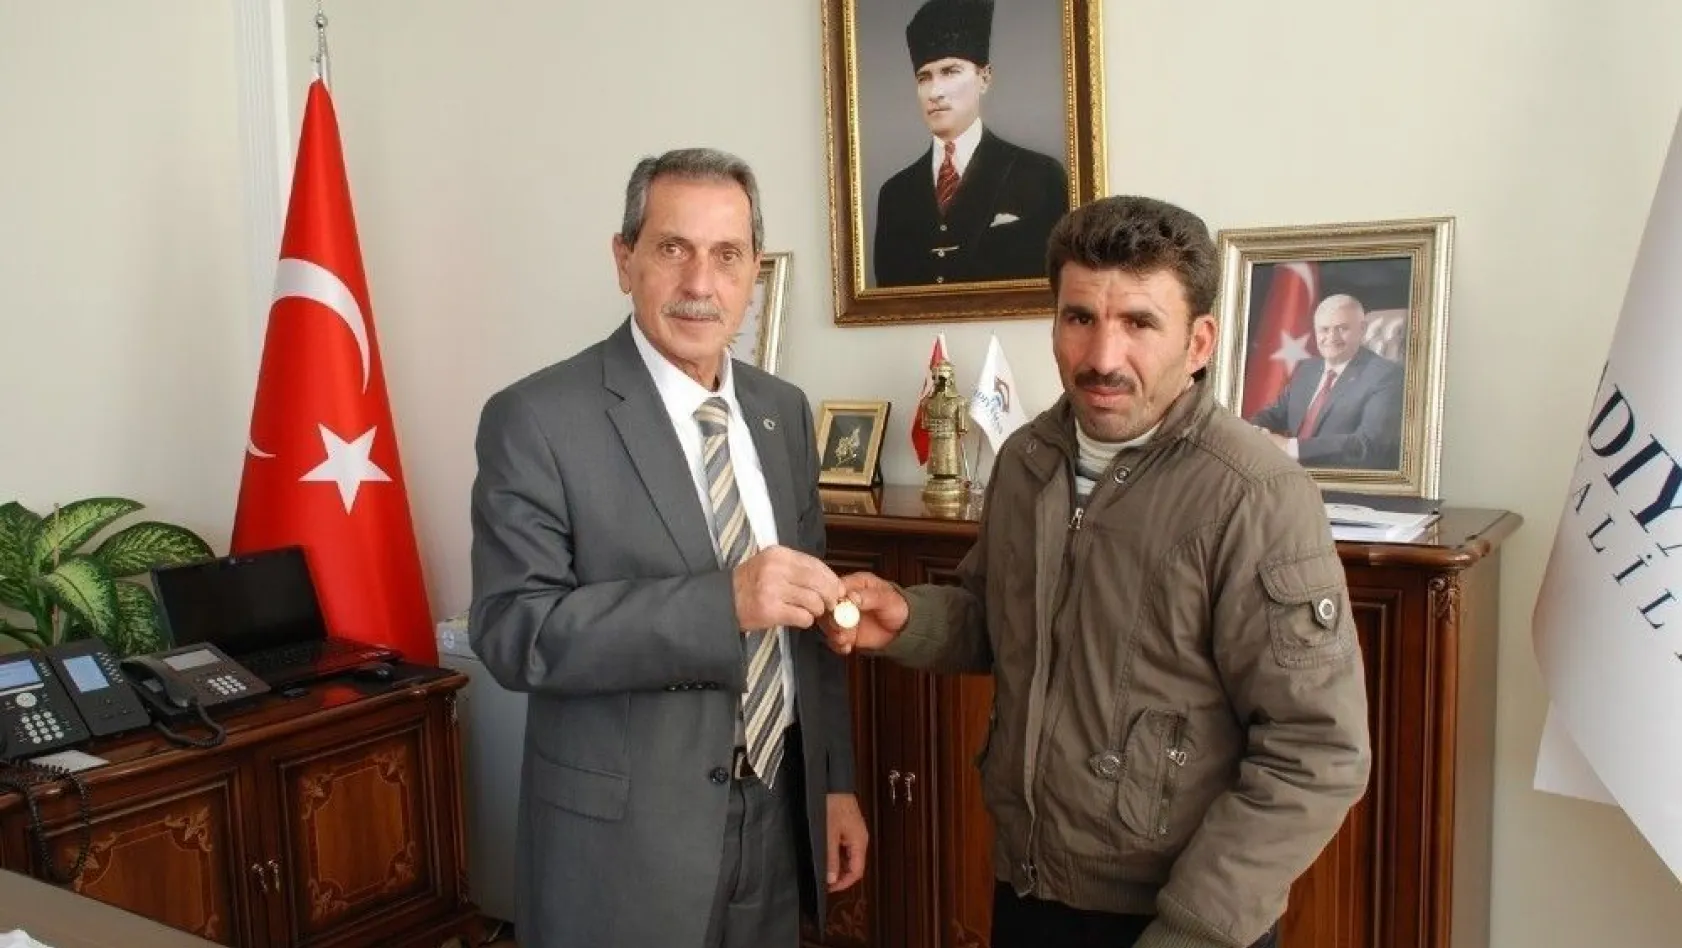 Altın bulan Suriyeli vatandaş Vali tarafından ödüllendirildi
